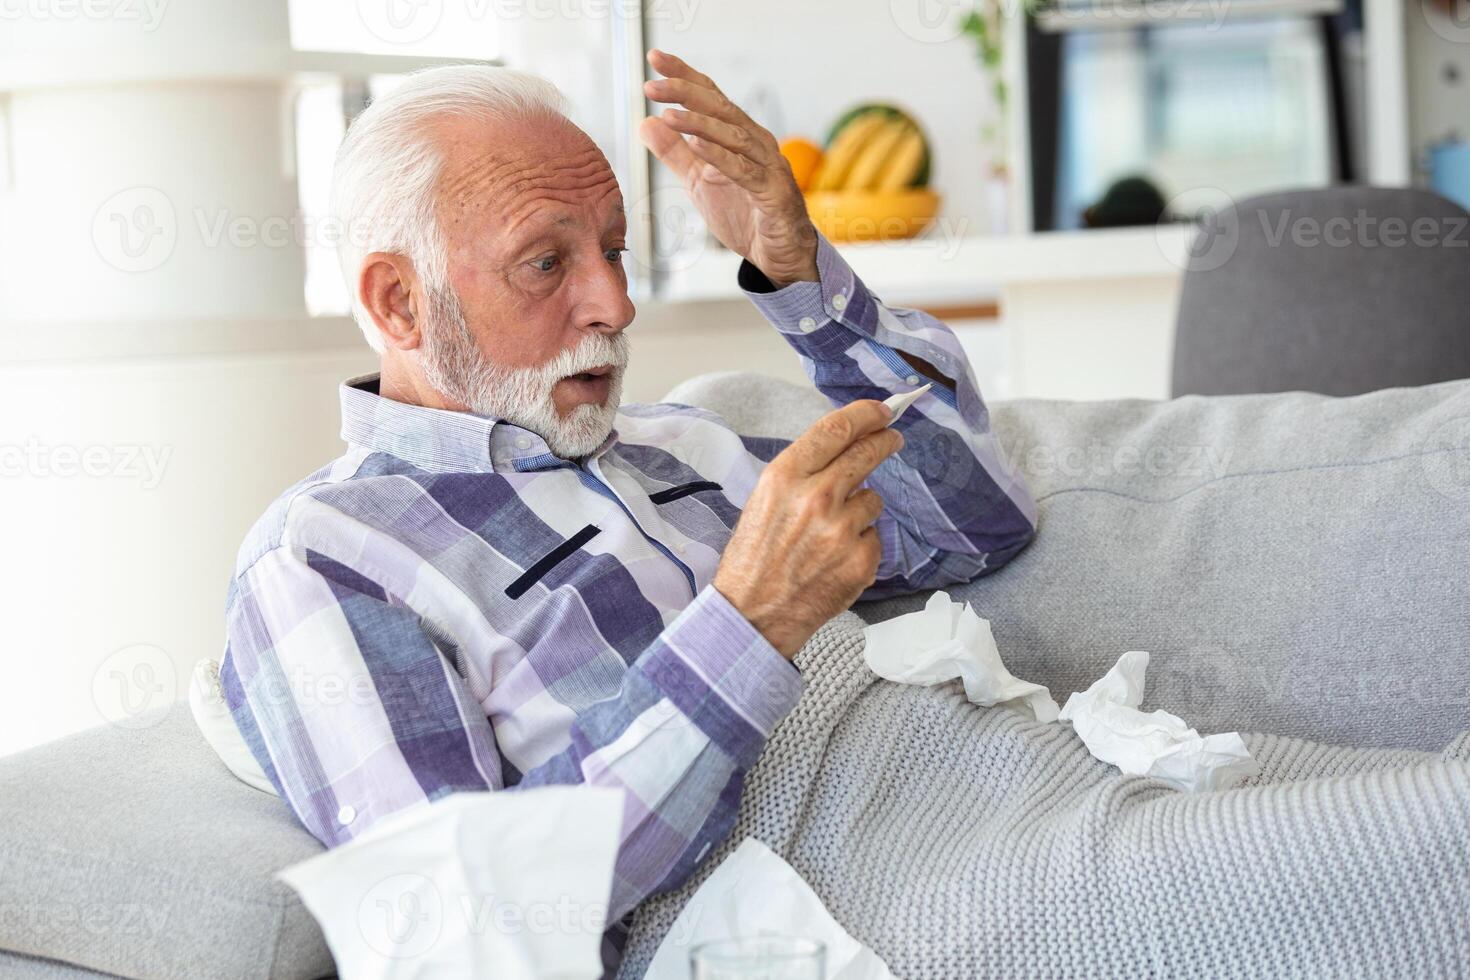 Neu Coronavirus covid-19 Ausbruch Situation mit Pandemie Epidemie Warnung - - Erwachsene kaukasisch Senior alt Mann mit Fieber Symptome mögen Krankheit kalt saisonal Grippe - - Menschen und Virus Konzept foto